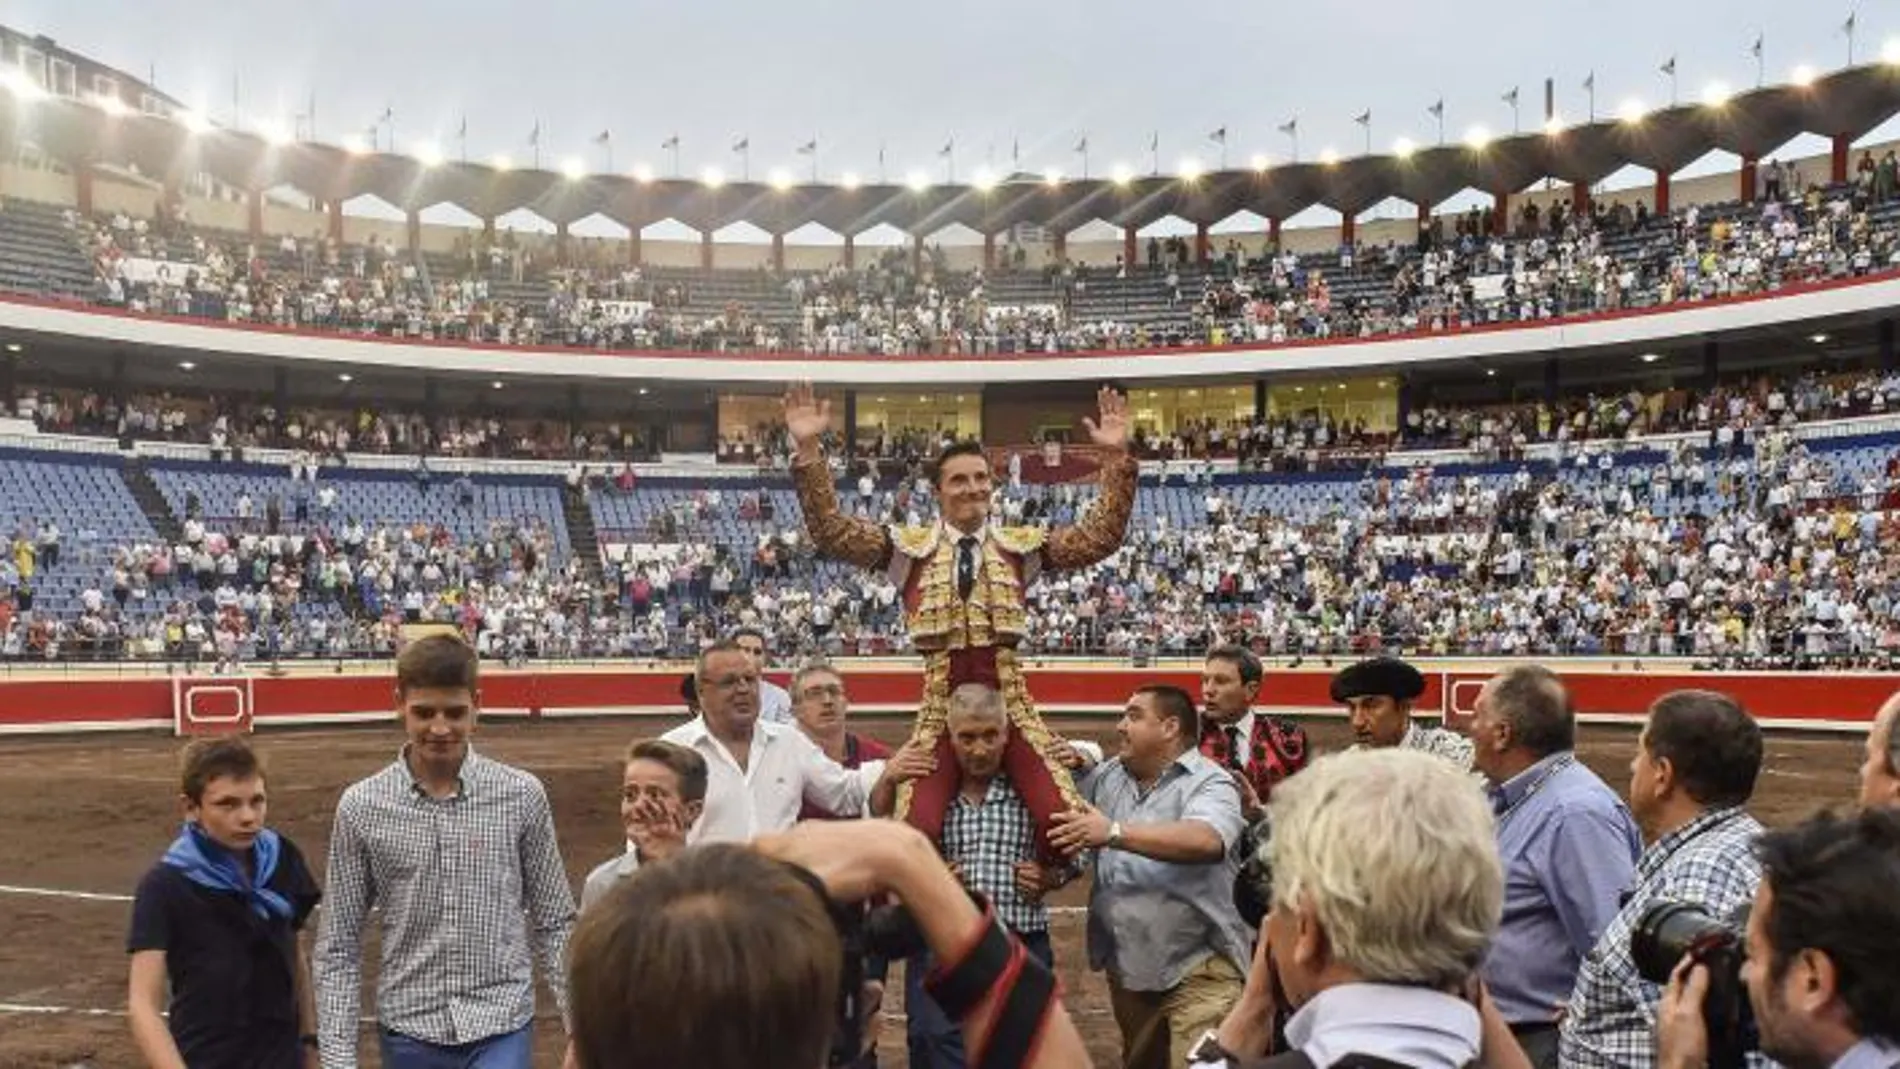 Diego Urdiales, triunfador en 2015, saliendo a hombre del coso de Vista Alegre